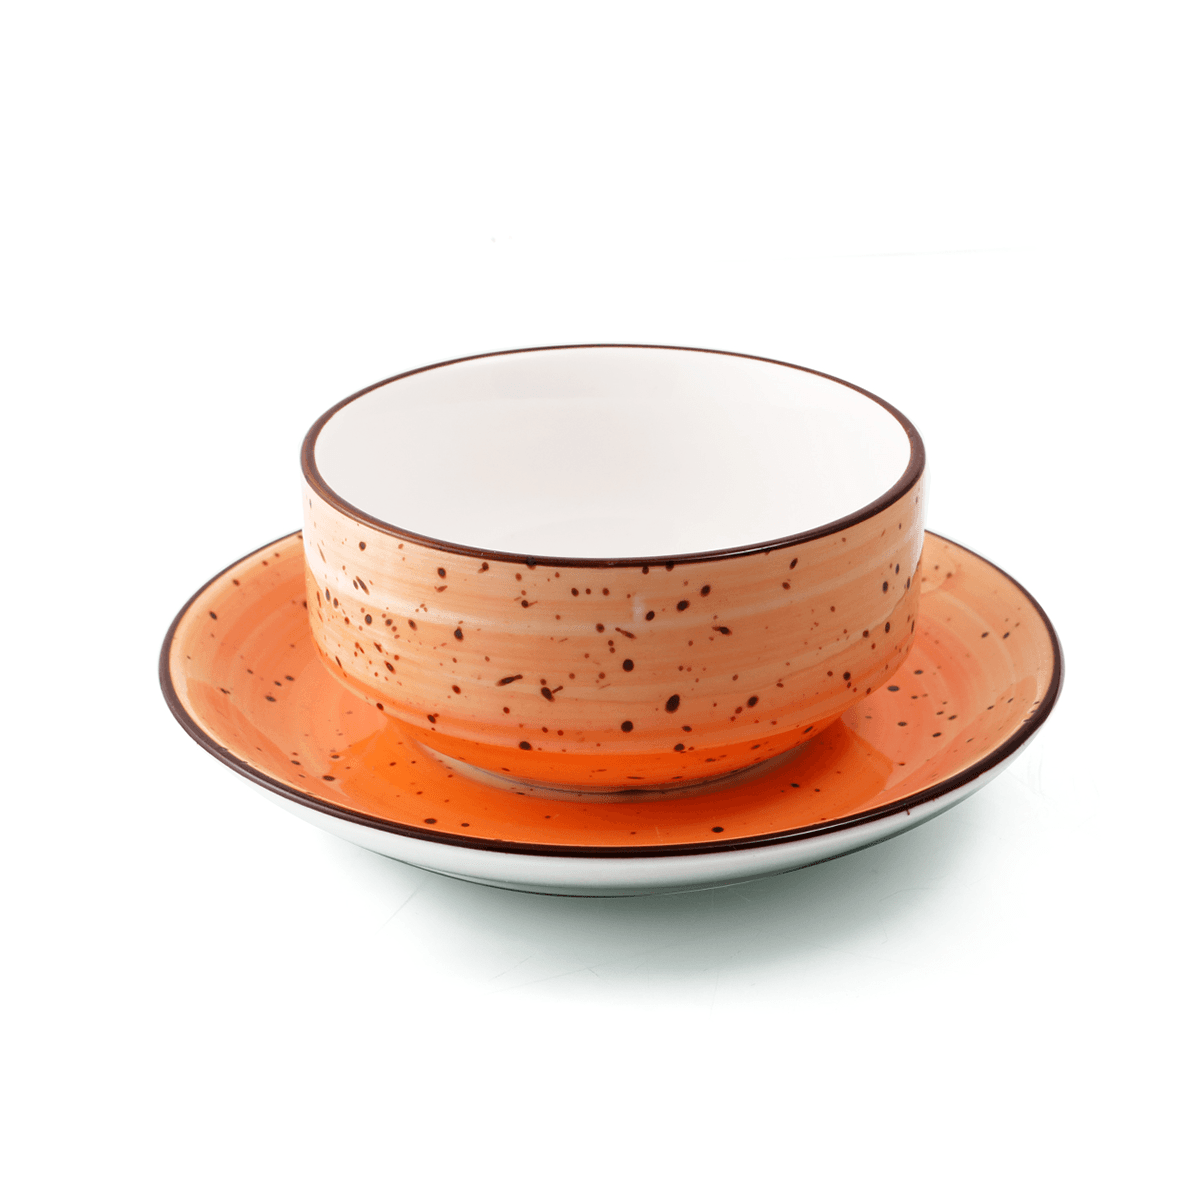 كوب قهوه مع صحن 220 مل بورسلين برتقالي بورسليتا Porceletta Glazed Porcelain Coffee Cup & Saucer